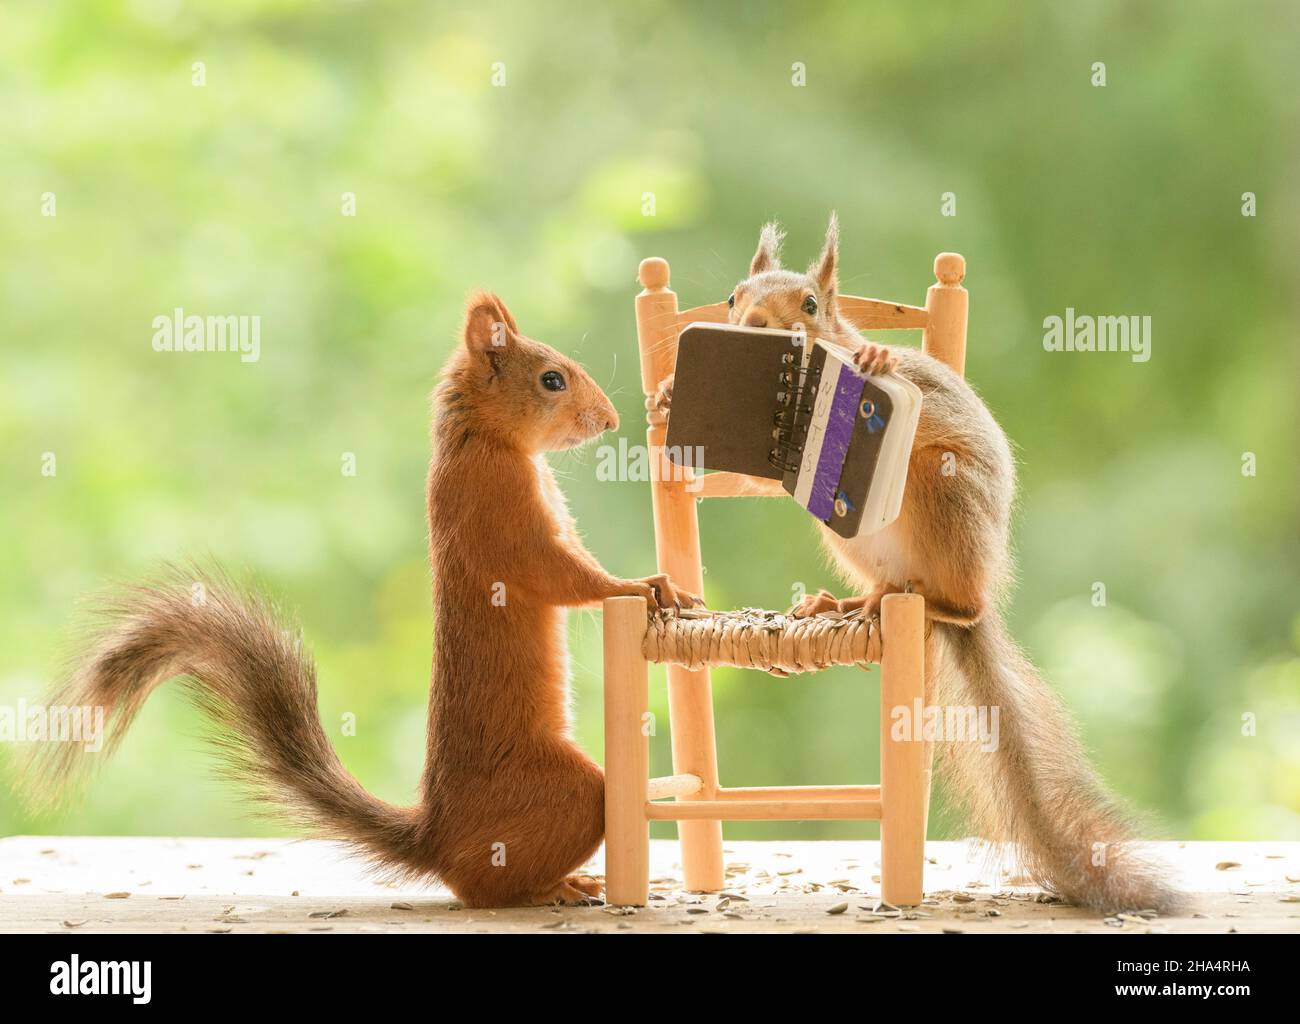 Standing on a chair immagini e fotografie stock ad alta risoluzione - Alamy